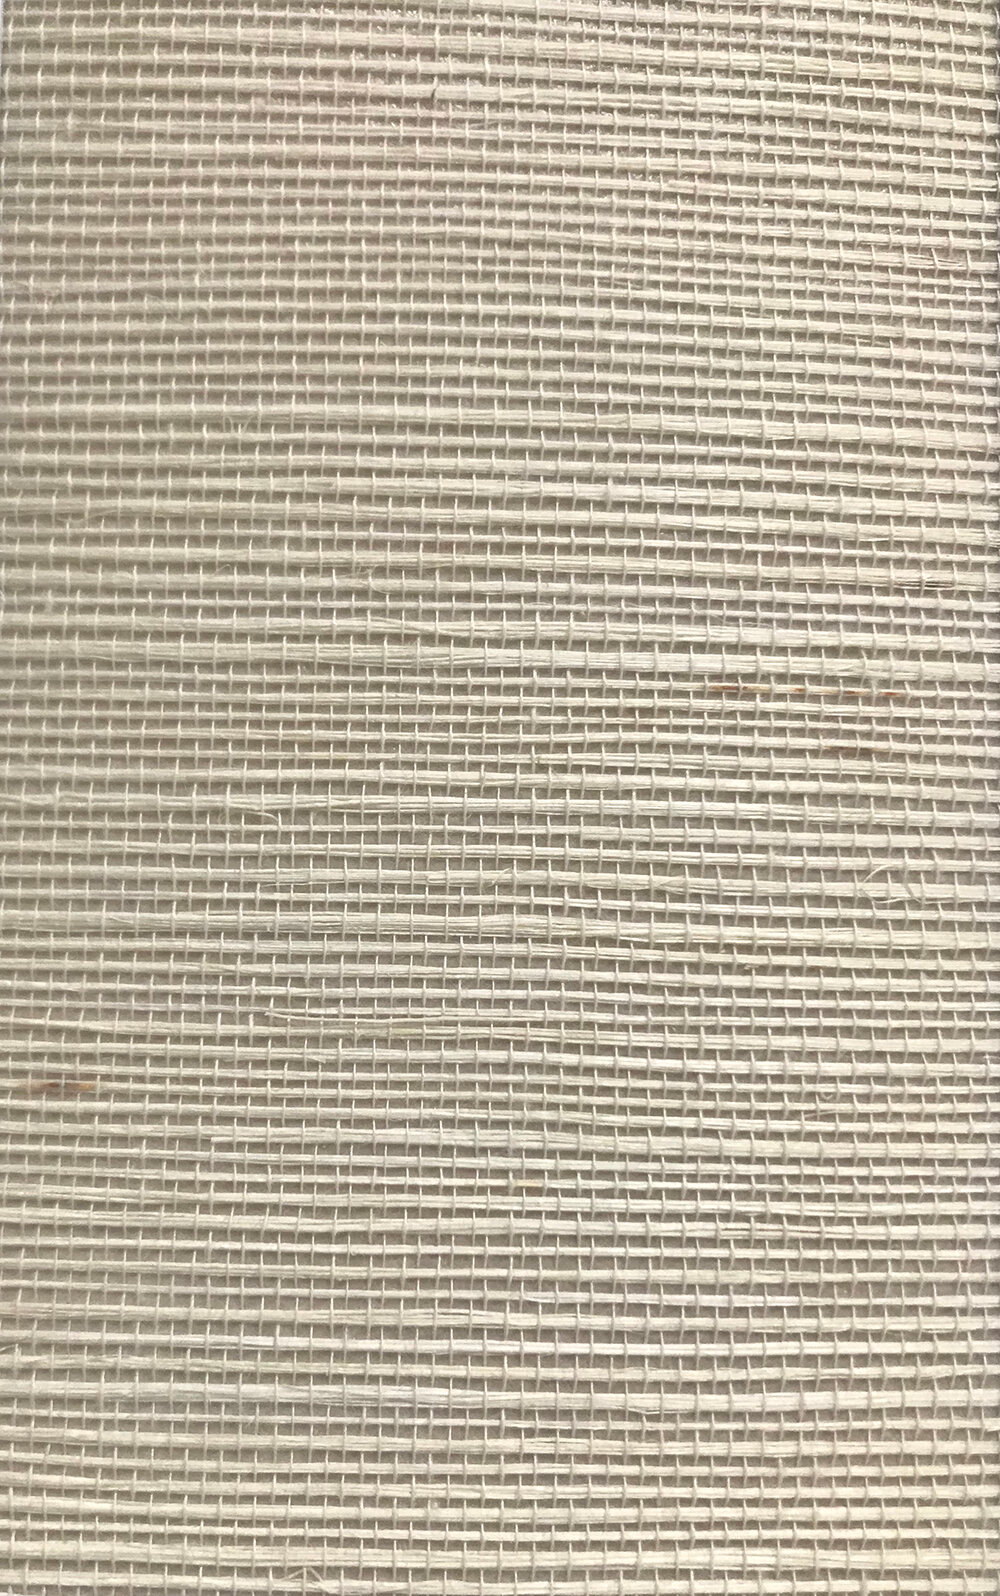 Kanoko Grasscloth Wallpaper - Linen - by Osborne & Little